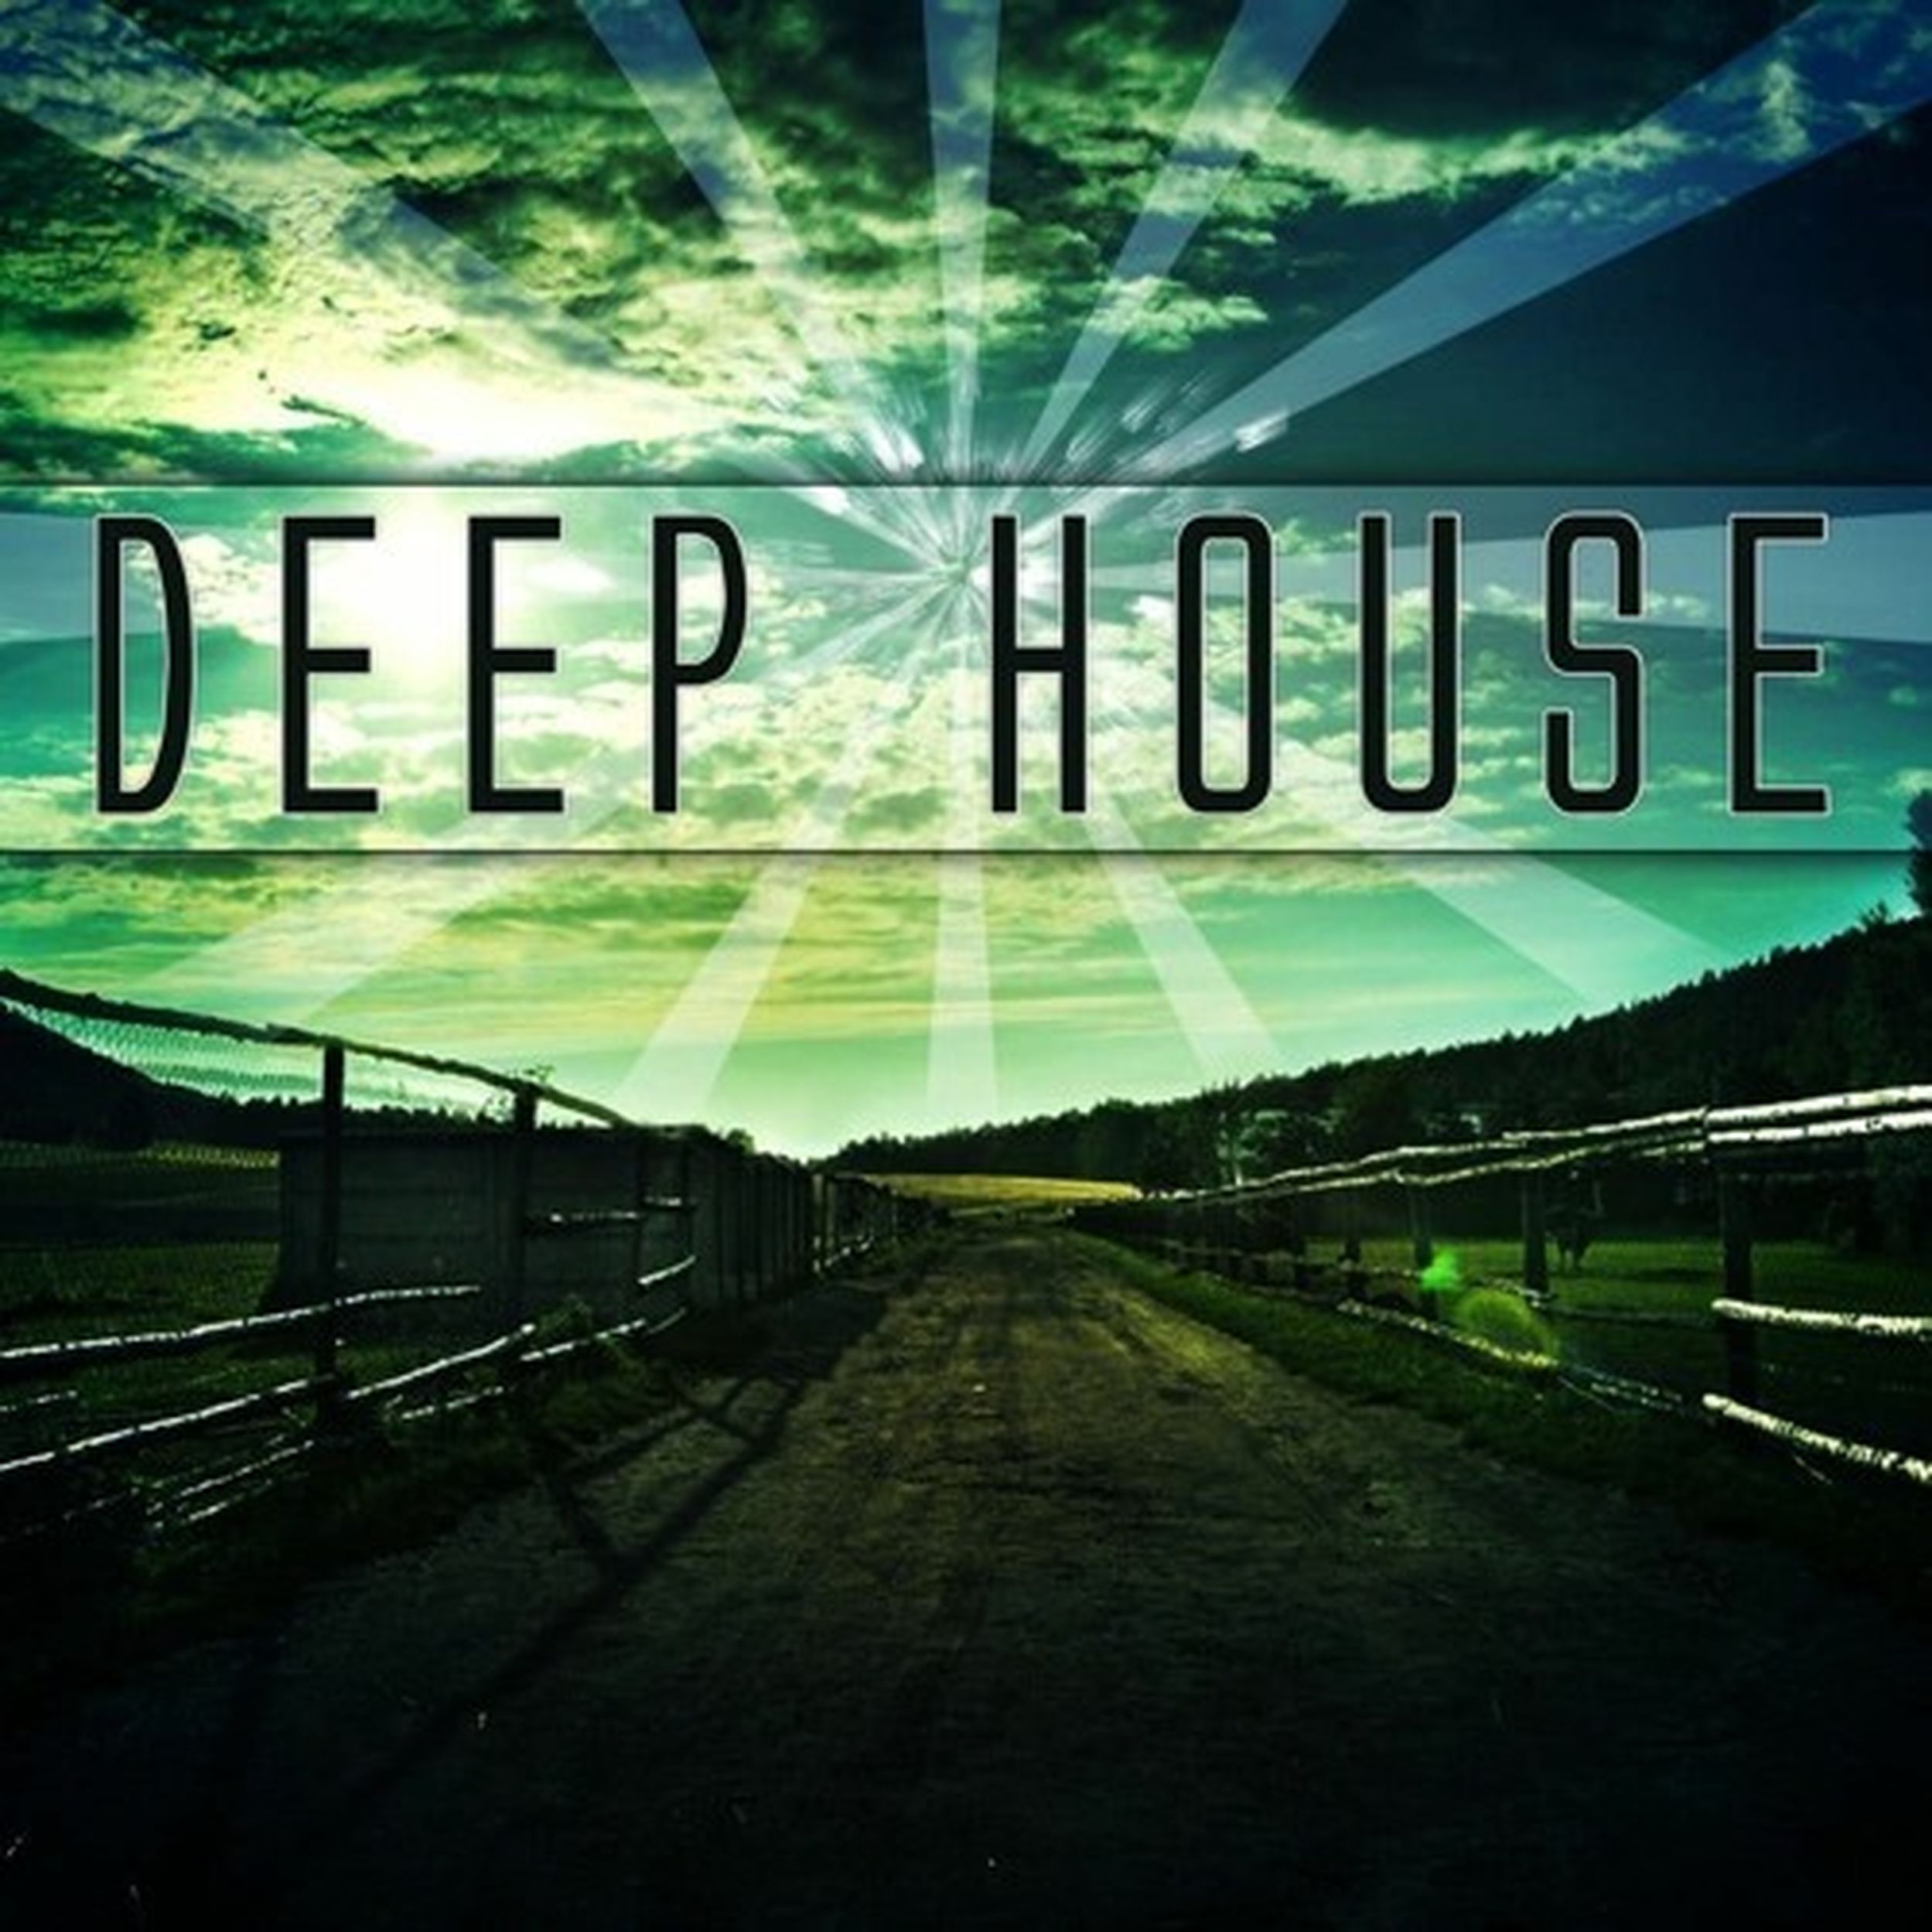 Deep haus. Дип Хаус. Лип и ха. Deep House обложка альбома. Обложка для дип хауса.